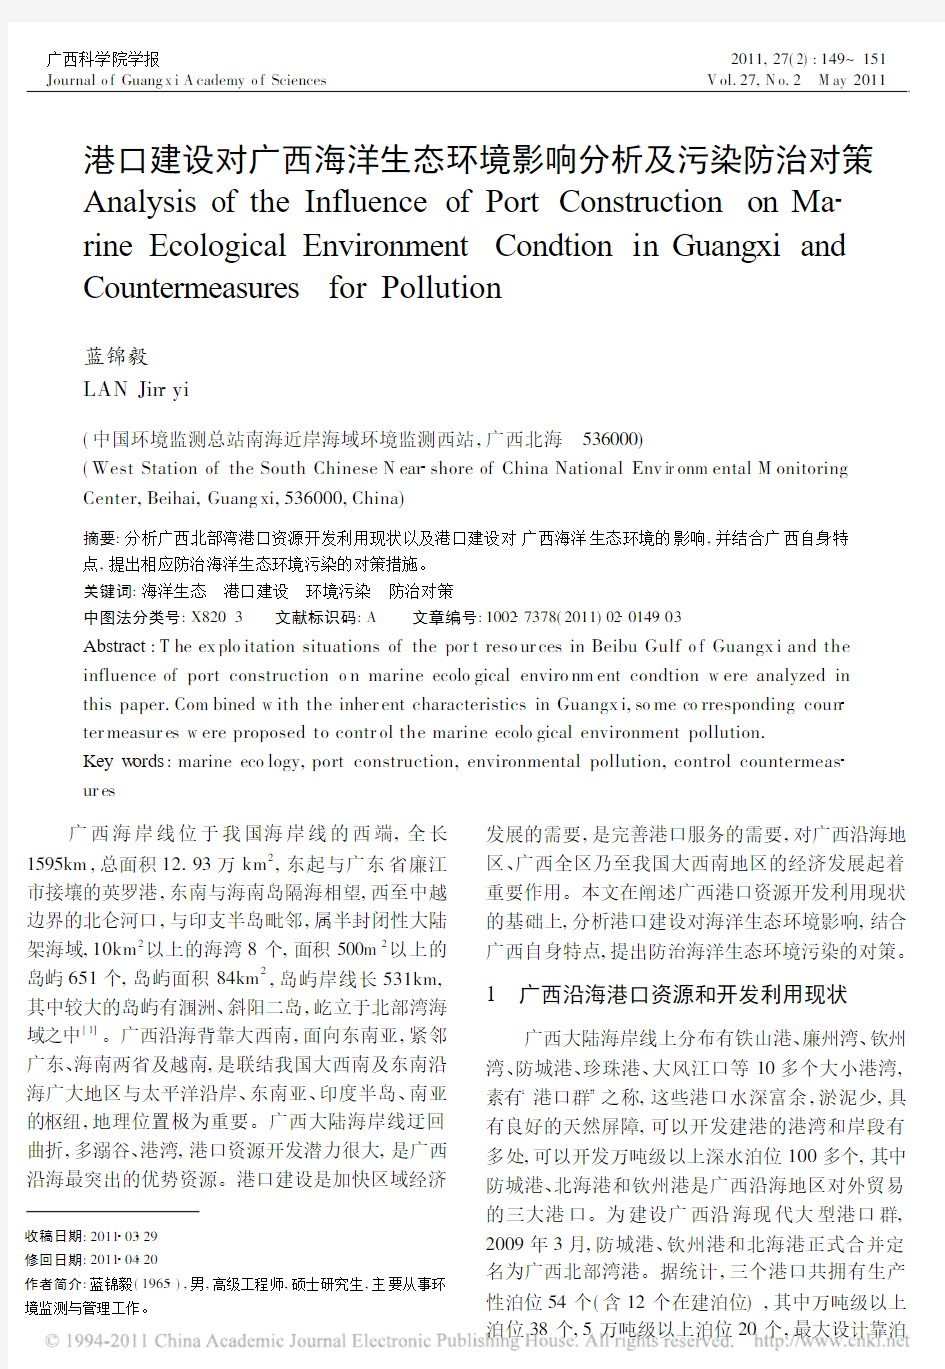 港口建设对广西海洋生态环境影响分析及污染防治对策